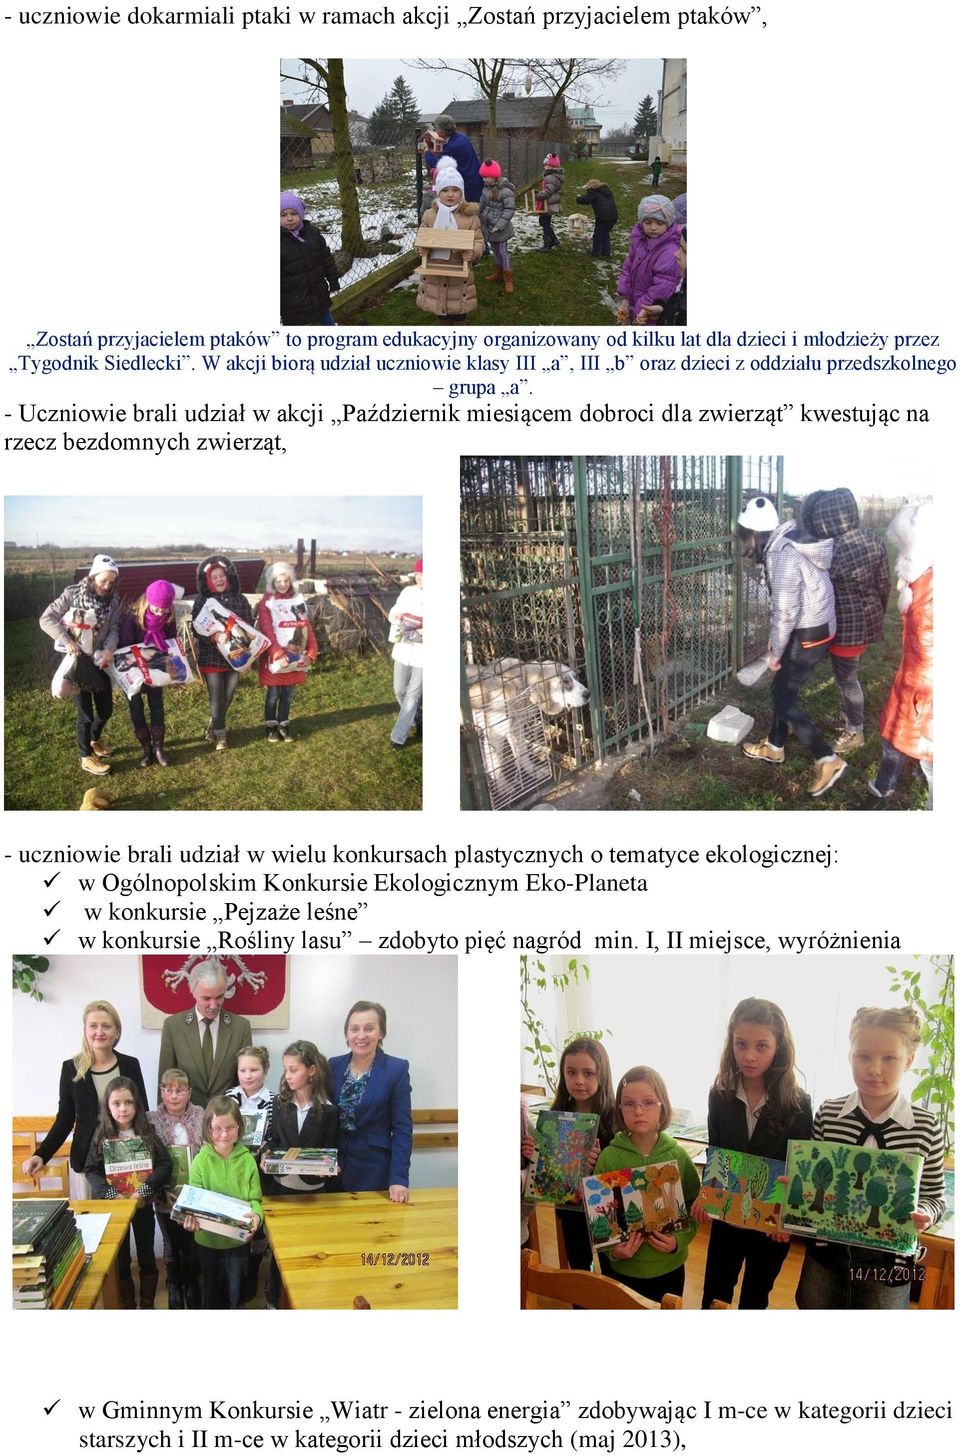 - Uczniowie brali udział w akcji Październik miesiącem dobroci dla zwierząt kwestując na rzecz bezdomnych zwierząt, - uczniowie brali udział w wielu konkursach plastycznych o tematyce